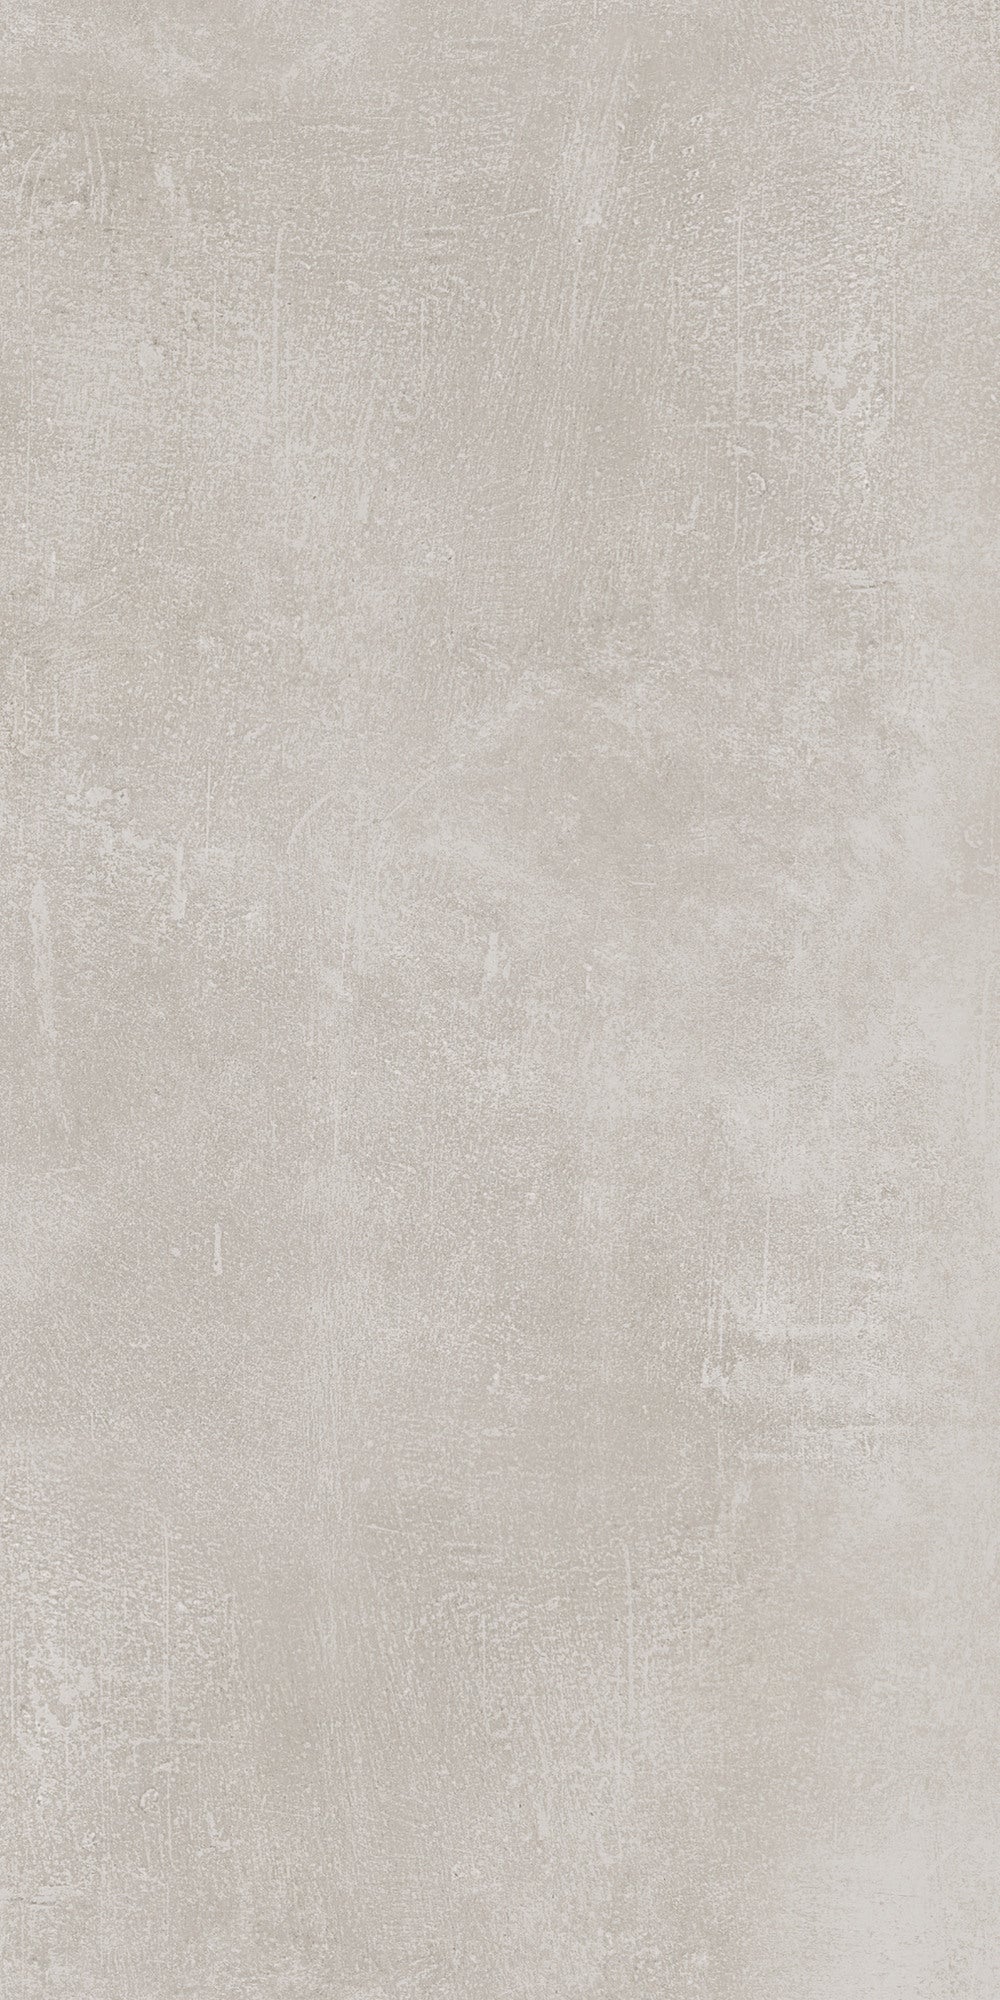 Фото - Плитка Stargres Gres szkliwiony Luxor white lapp. 30x60 cm 1.62 m2 